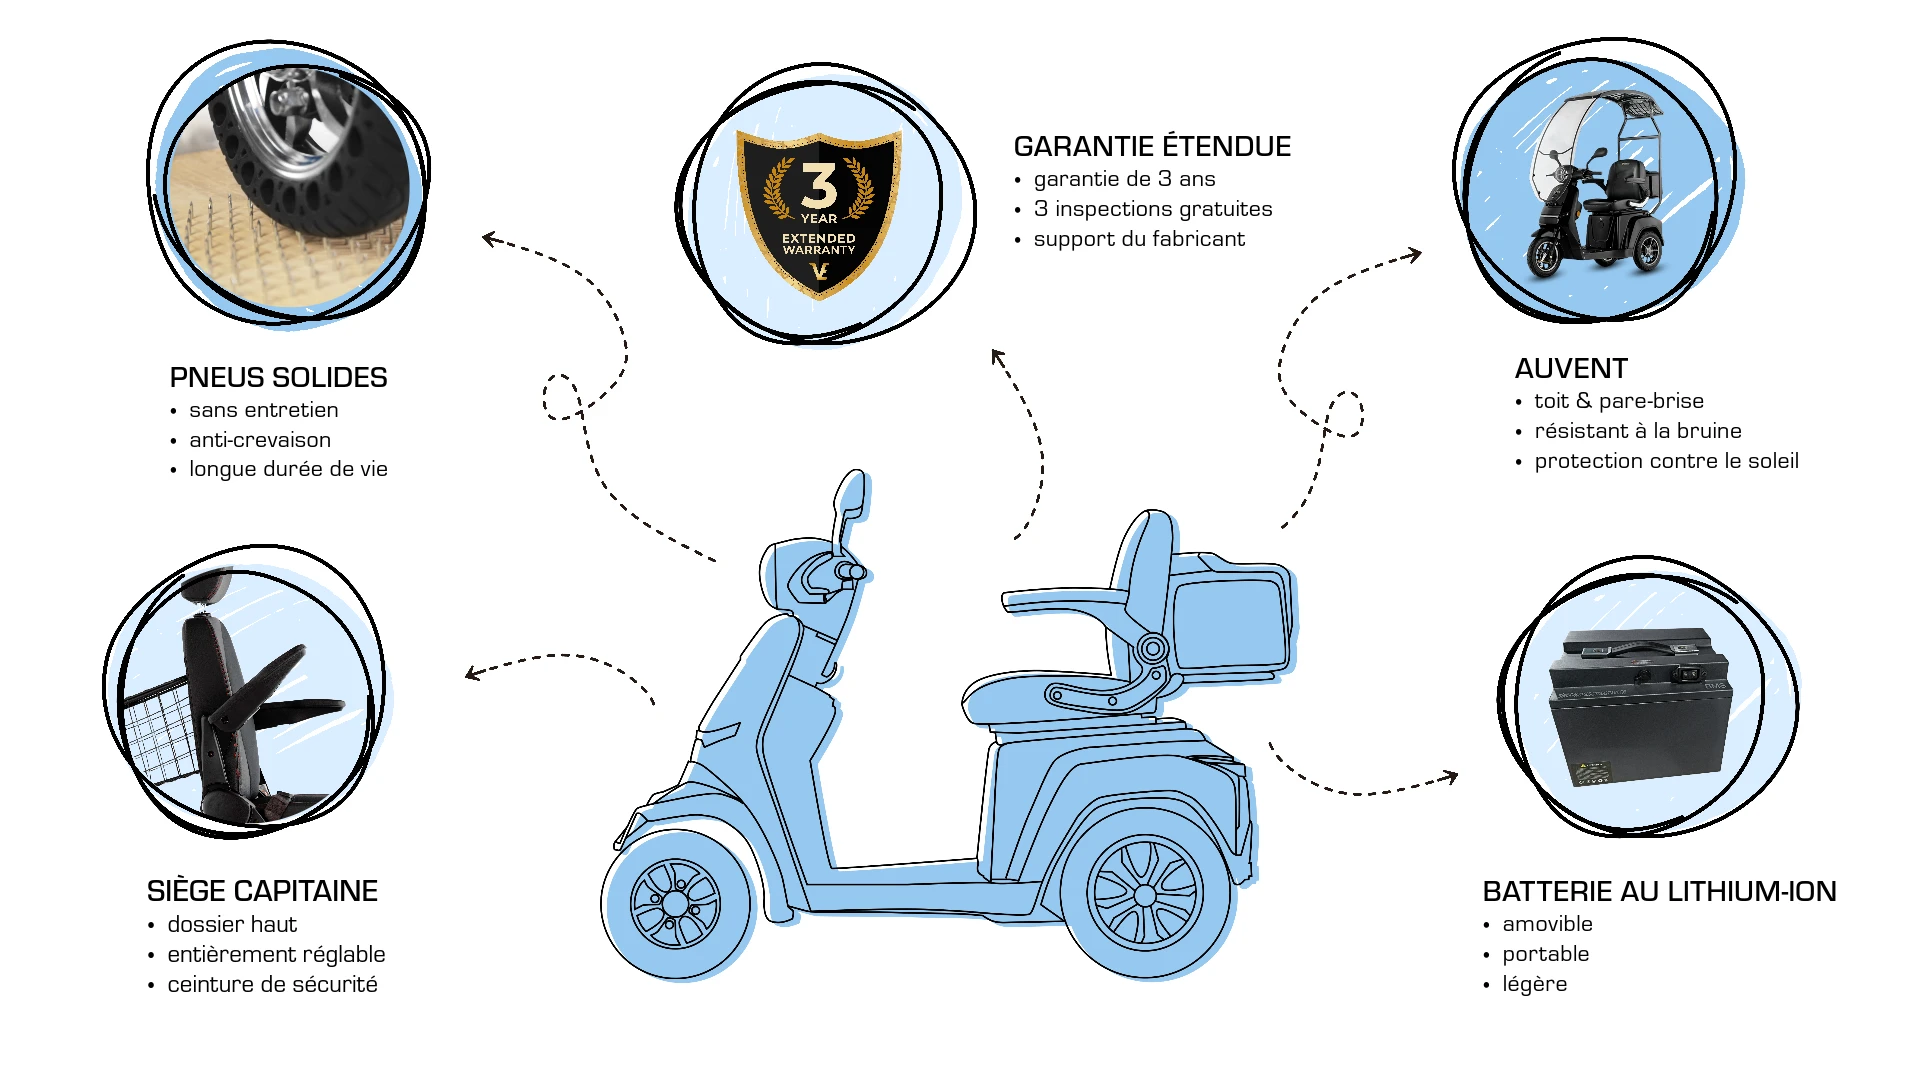 Veleco GRAVIS extras, améliorations, pneus pleins pour scooter de mobilité, garantie prolongée, batterie lithium-ion, toit, siège capitaine